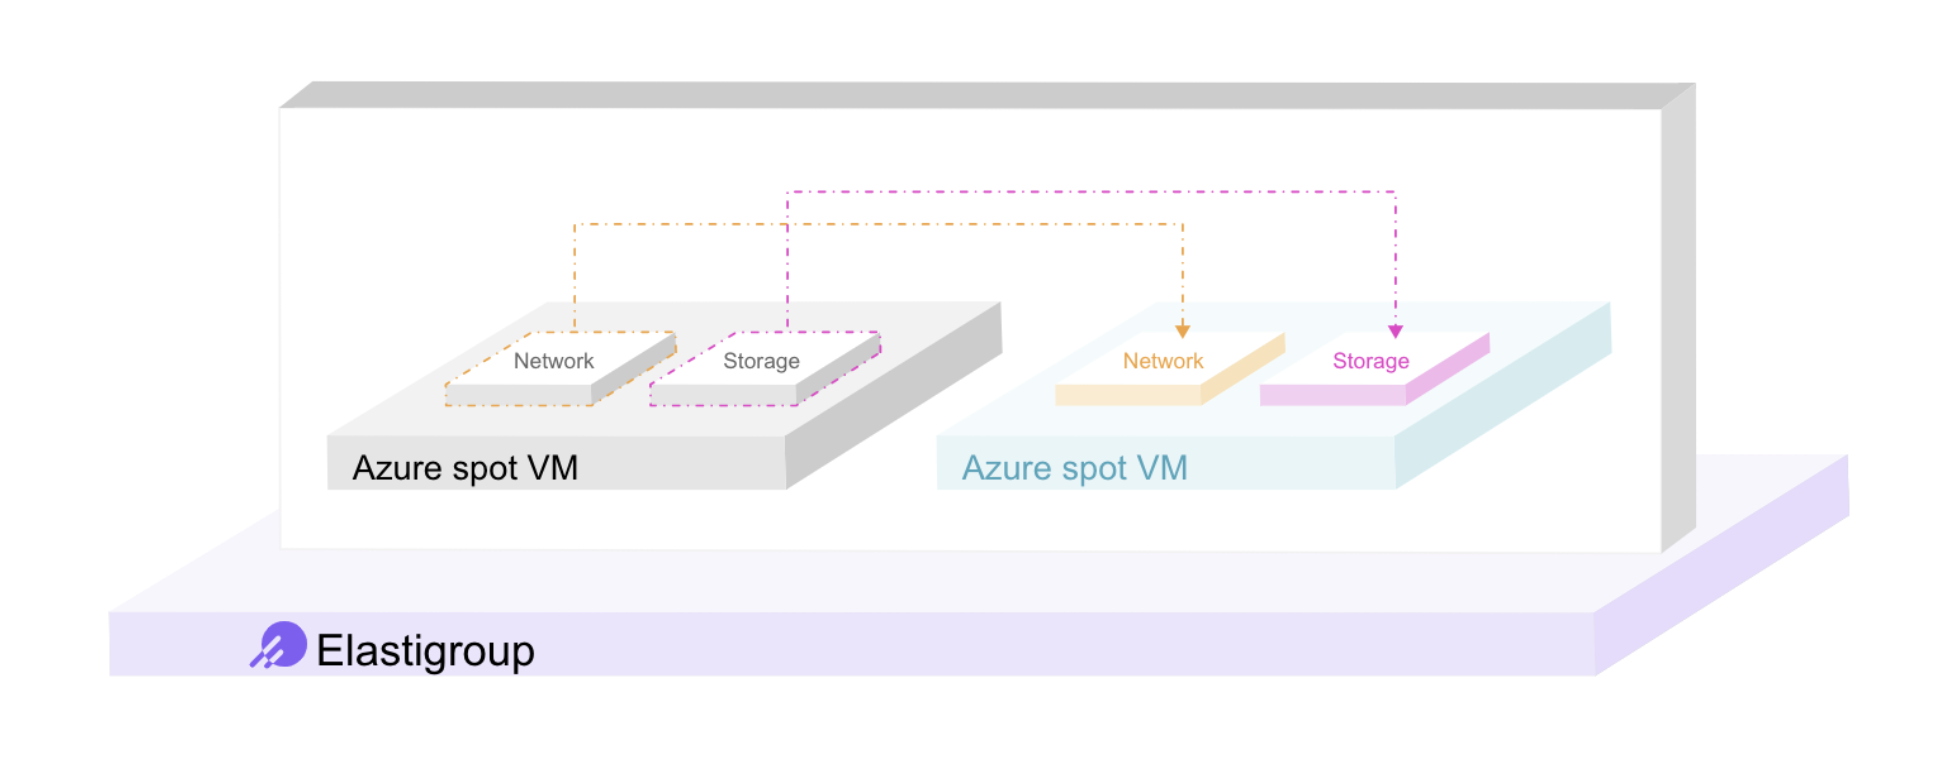 Illustration of Azure spot VMs